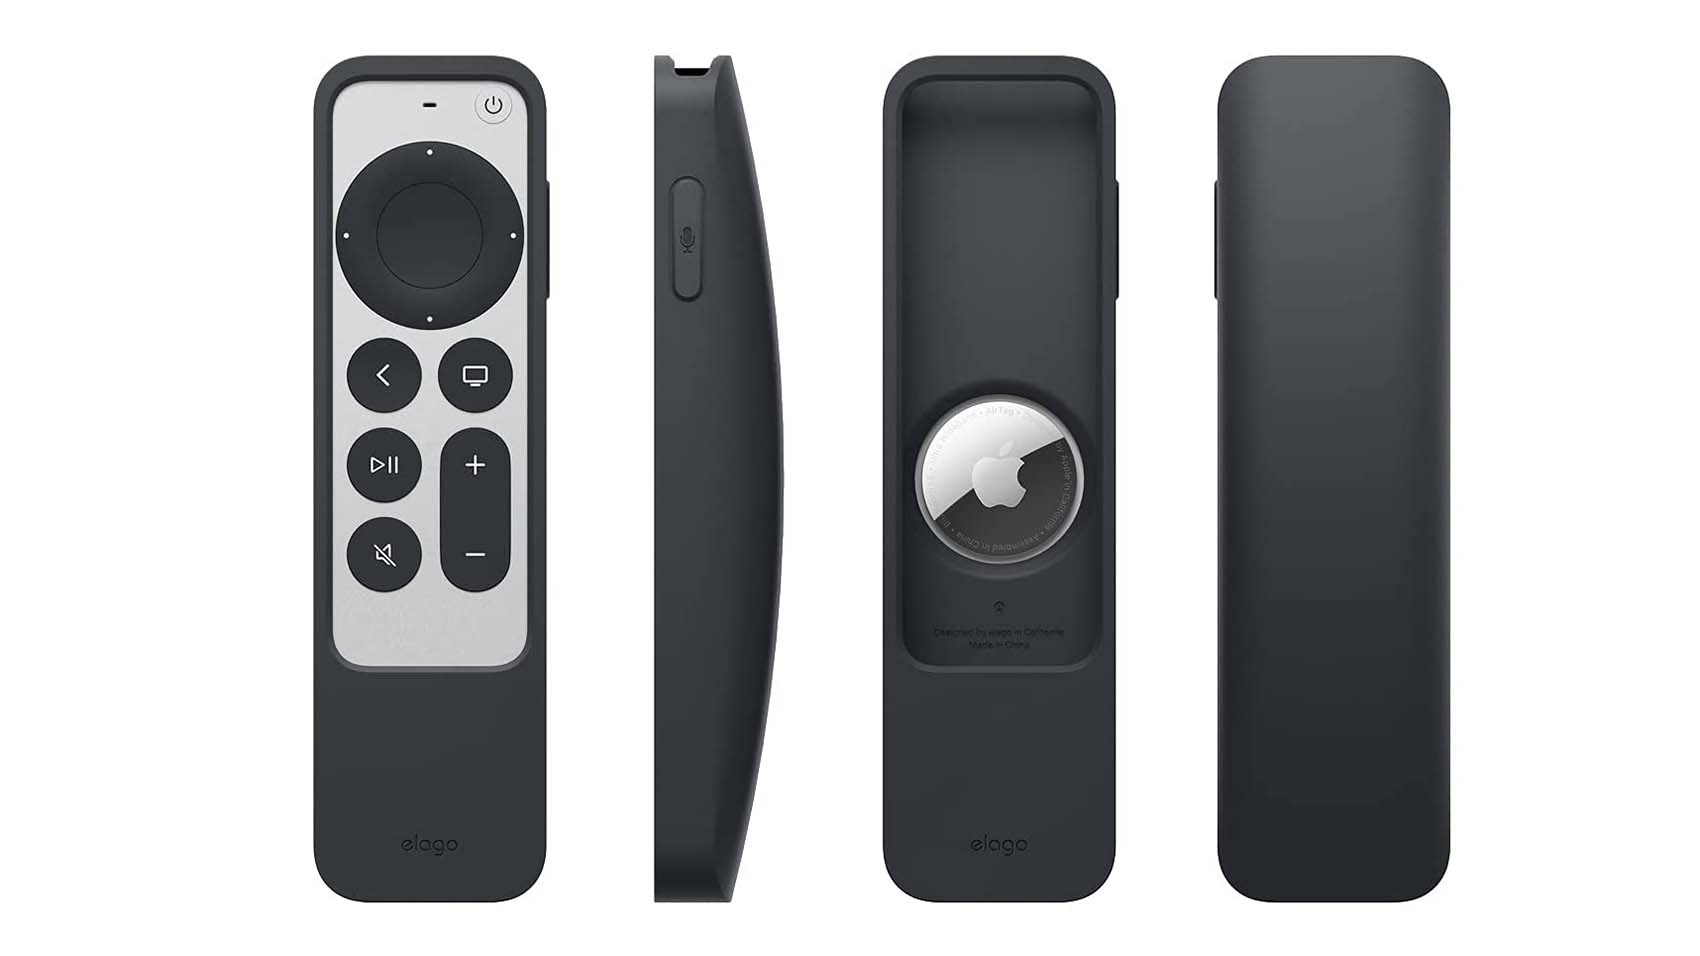 Elago Apple TV remote case